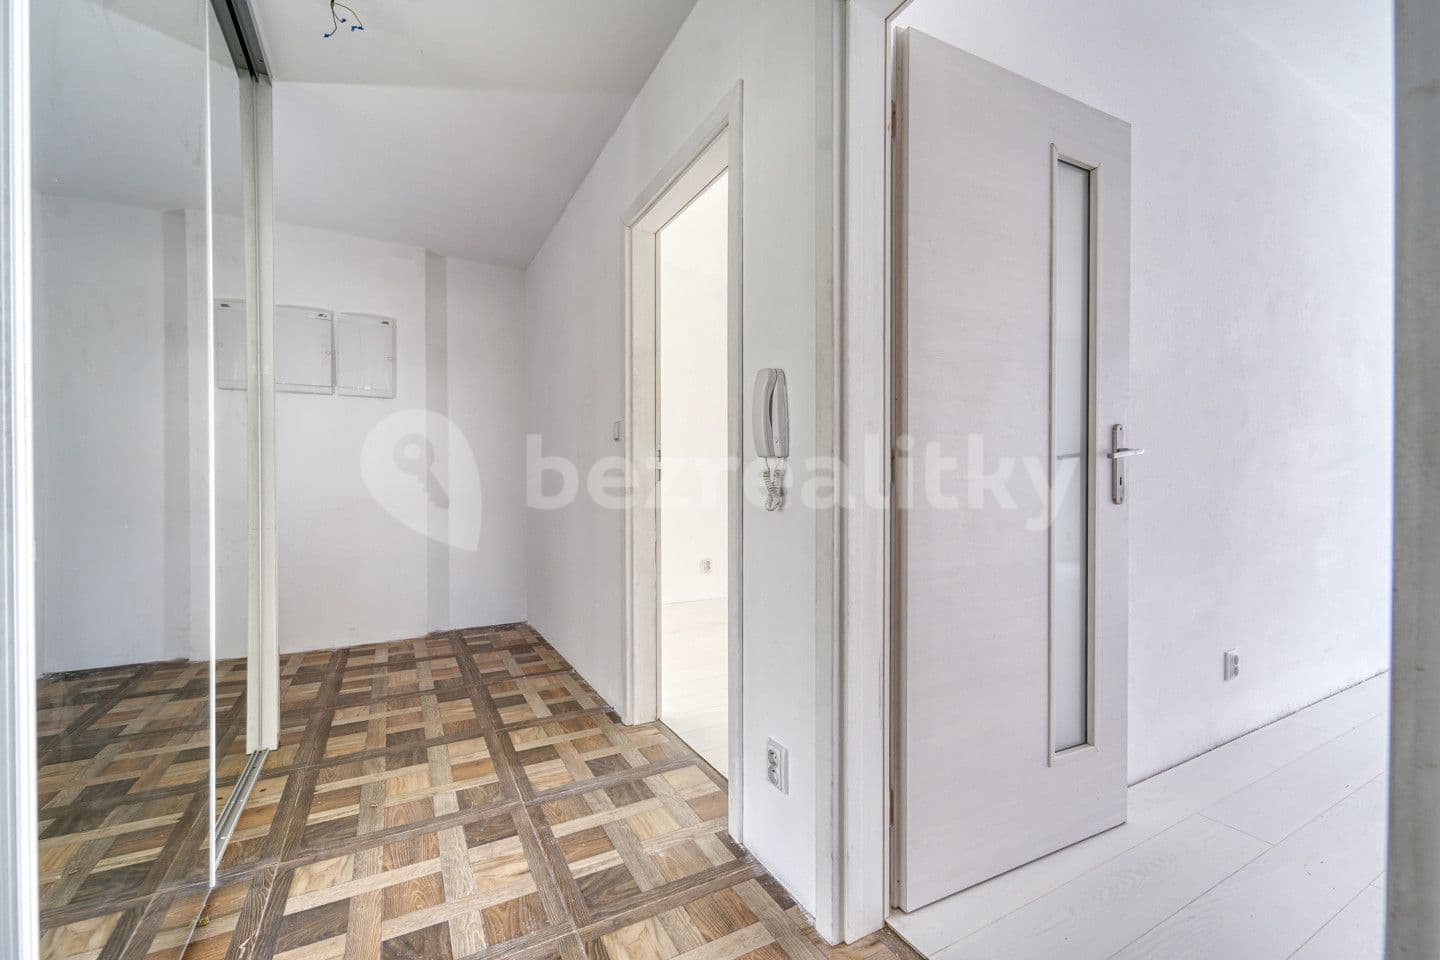 1 bedroom with open-plan kitchen flat for sale, 58 m², Špačková, Plzeň, Plzeňský Region